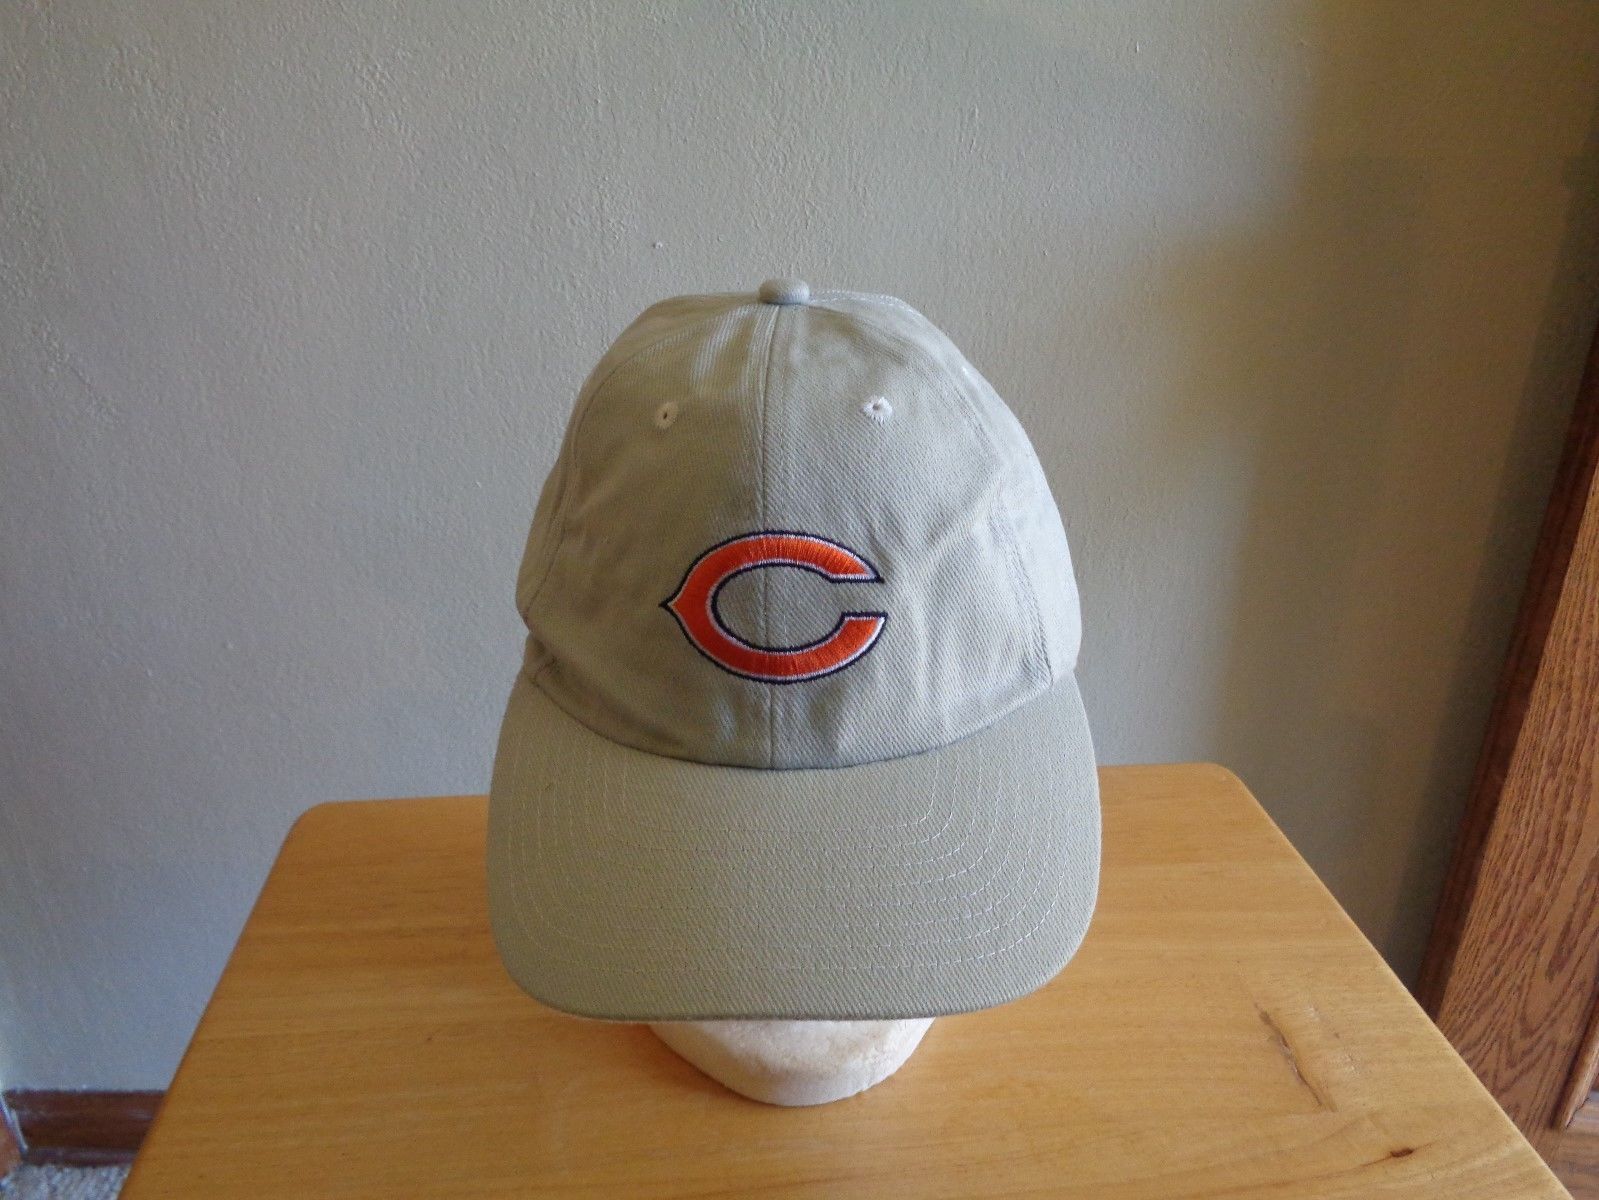 CHICAGO BEARS LOGO NFL FOOTBALL TEAM BASEBALL CAP HAT NEW I5